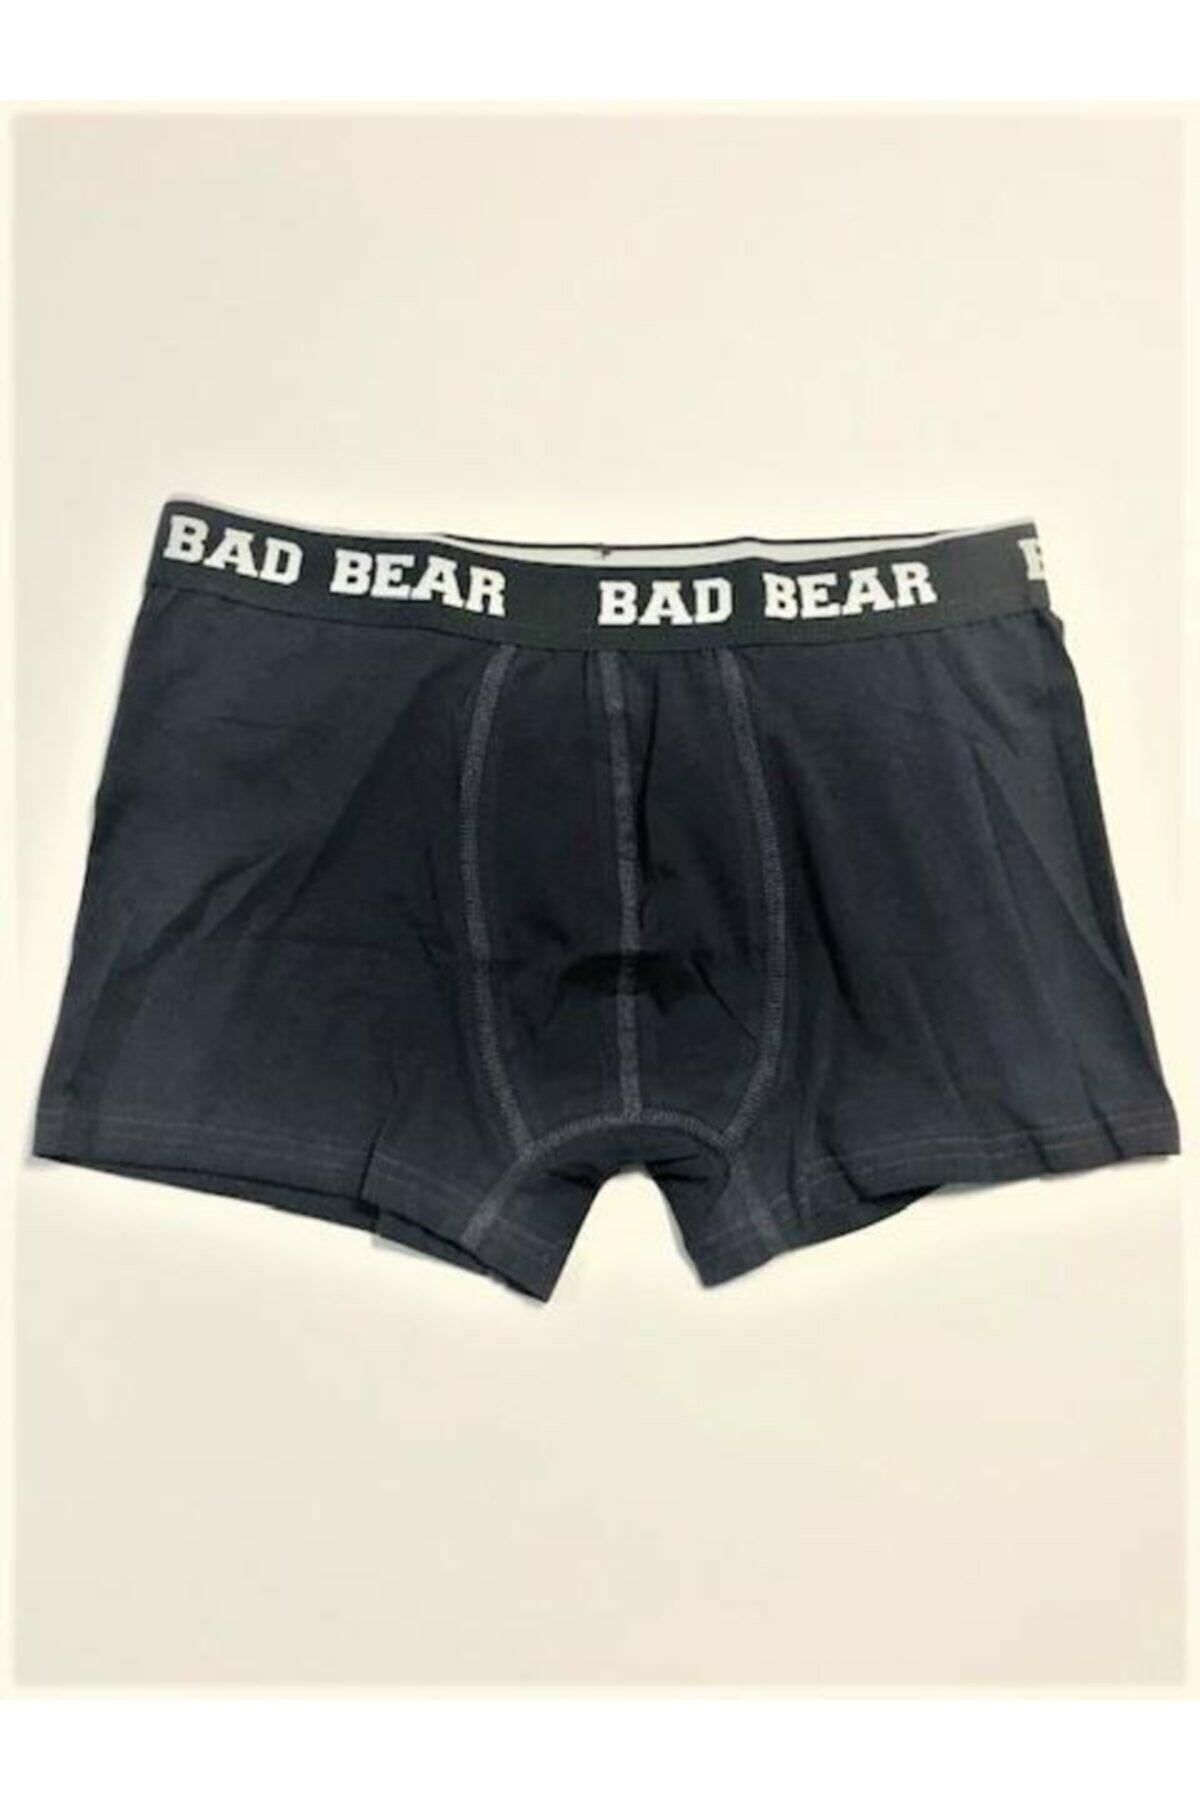 Bad Bear 21.01.03.002-c02 Basic Erkek Boxer